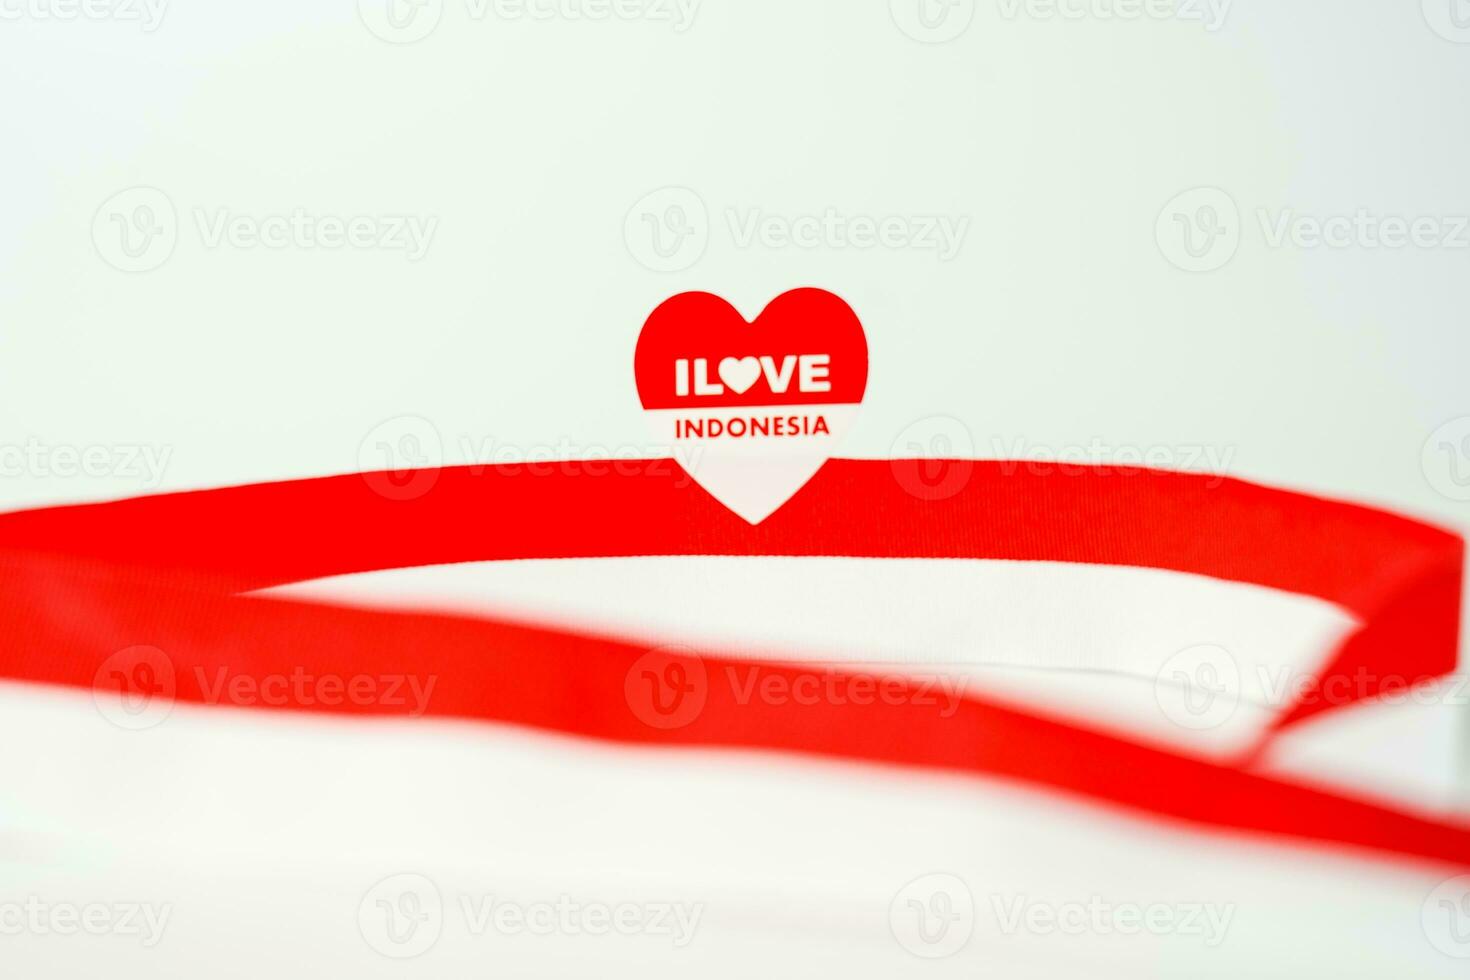 band, röd och vit flagga av indonesien oberoende dag augusti 17:e, stiker jag kärlek Indonesien, isolerat på vit bakgrund foto